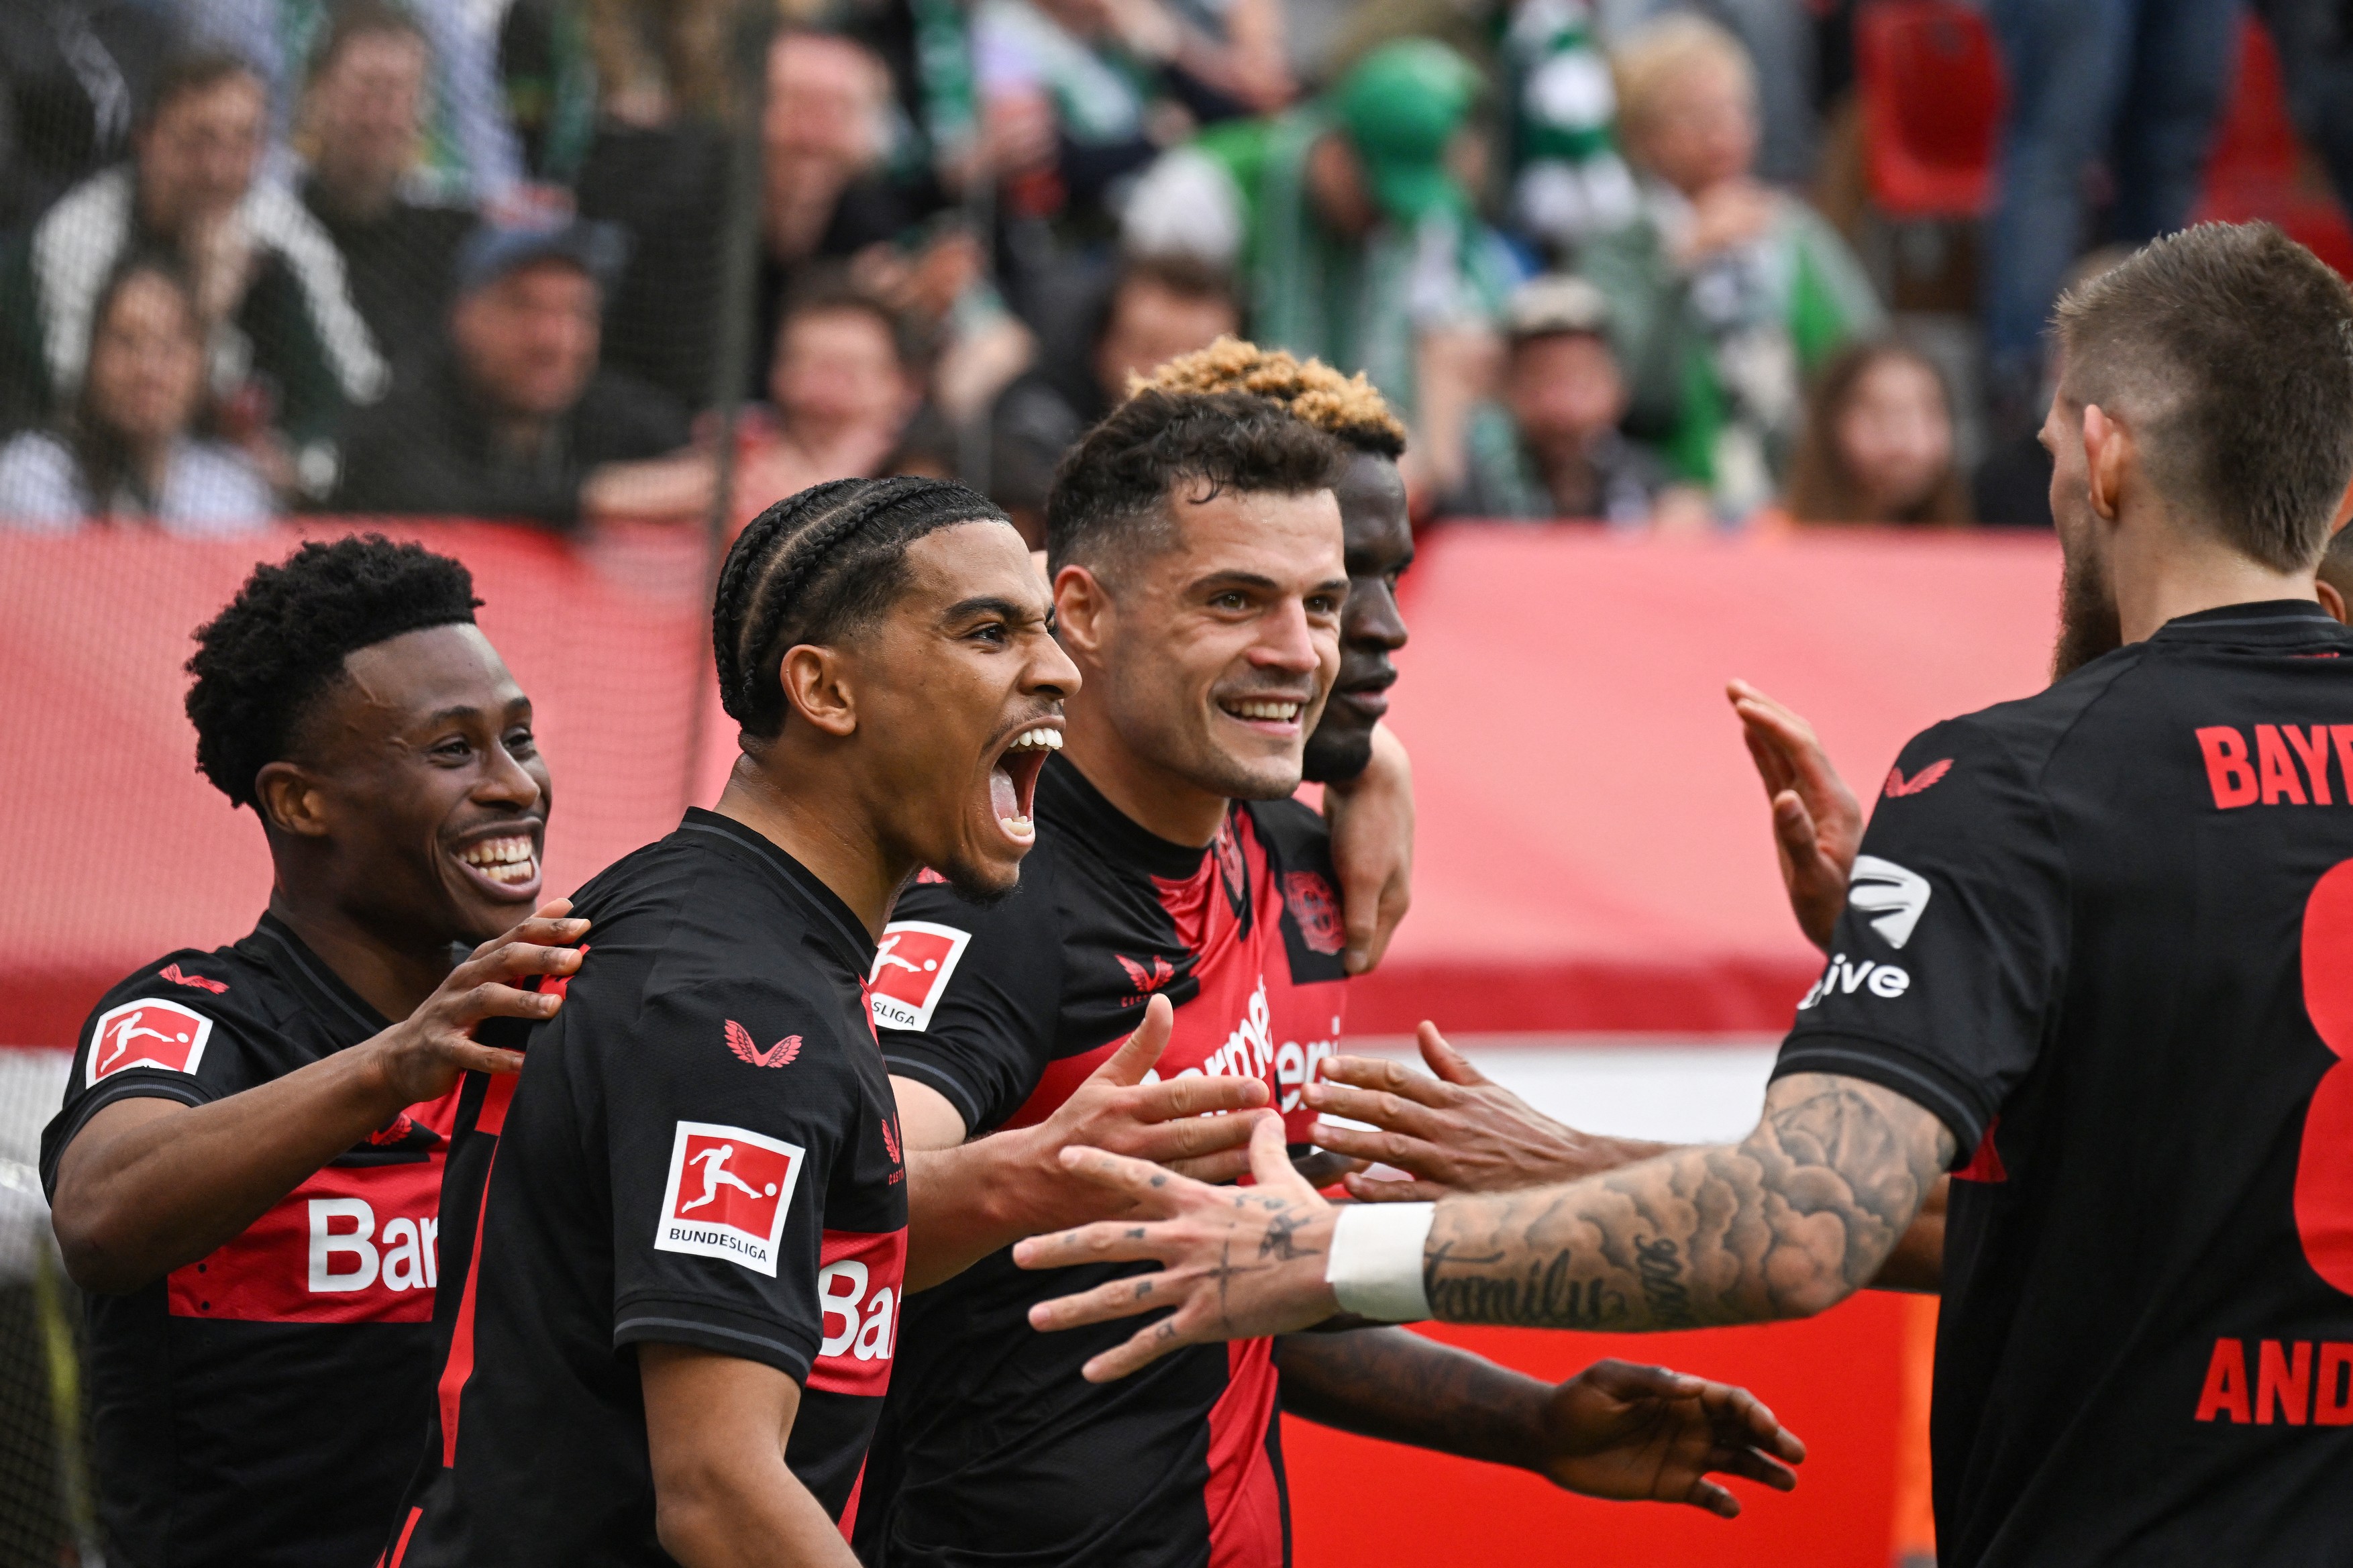 Bayer Leverkusen - Werder Bremen 3-0, ACUM, pe DGS 4. Wirtz majorează scorul. Leverkusen e campioană în acest moment!